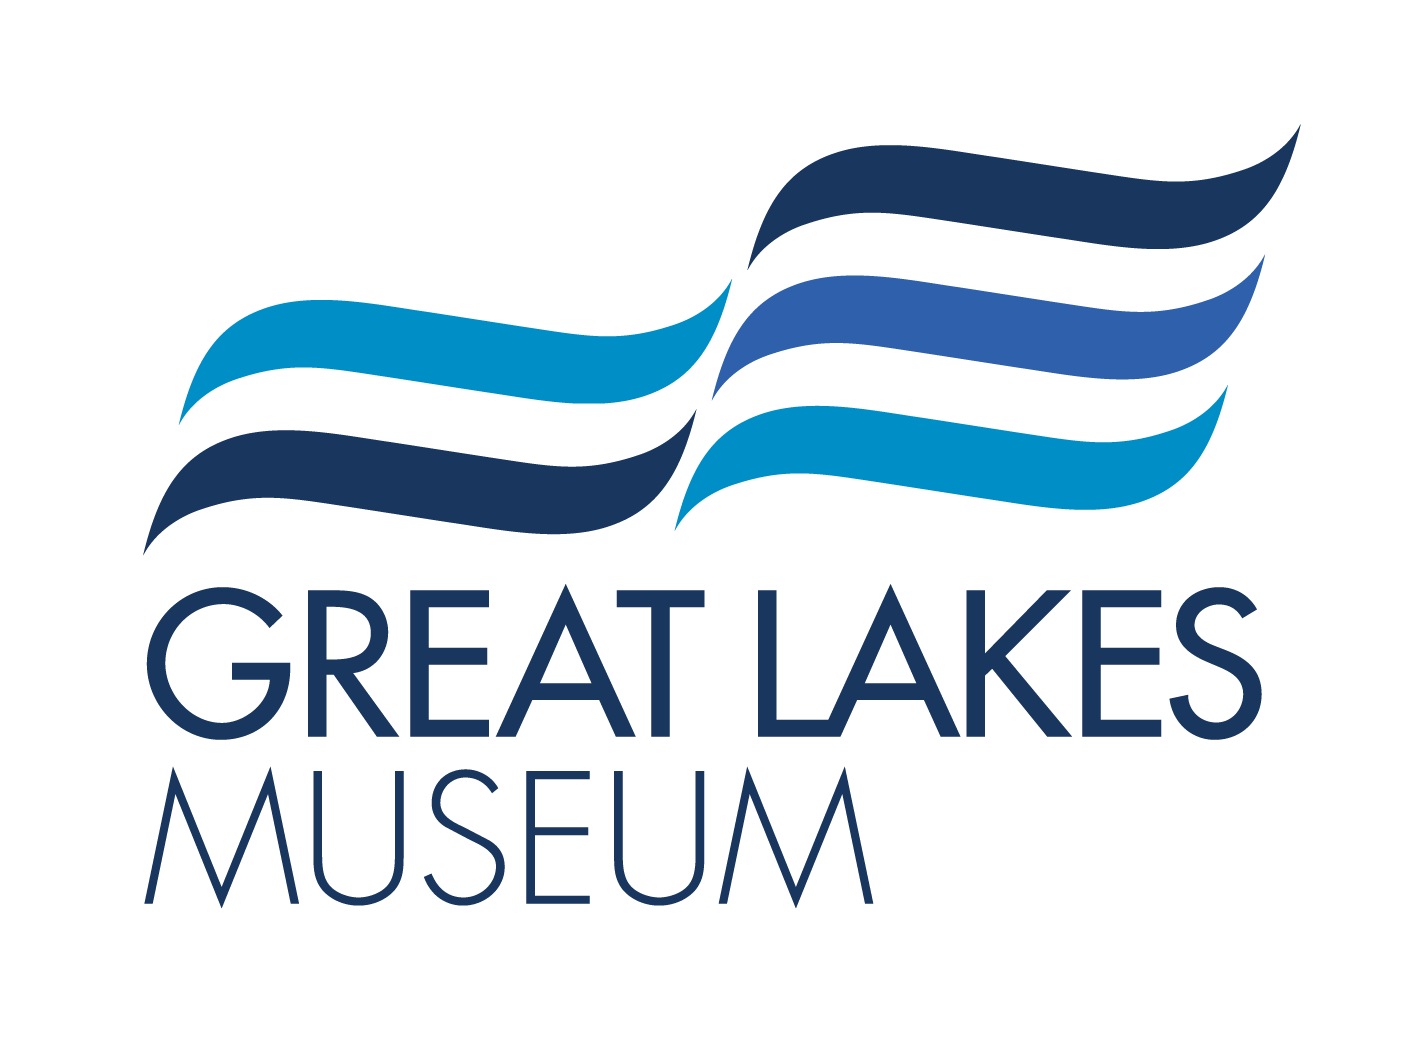 Great Lakes Museum logo (https://www.marmuseum.ca/)